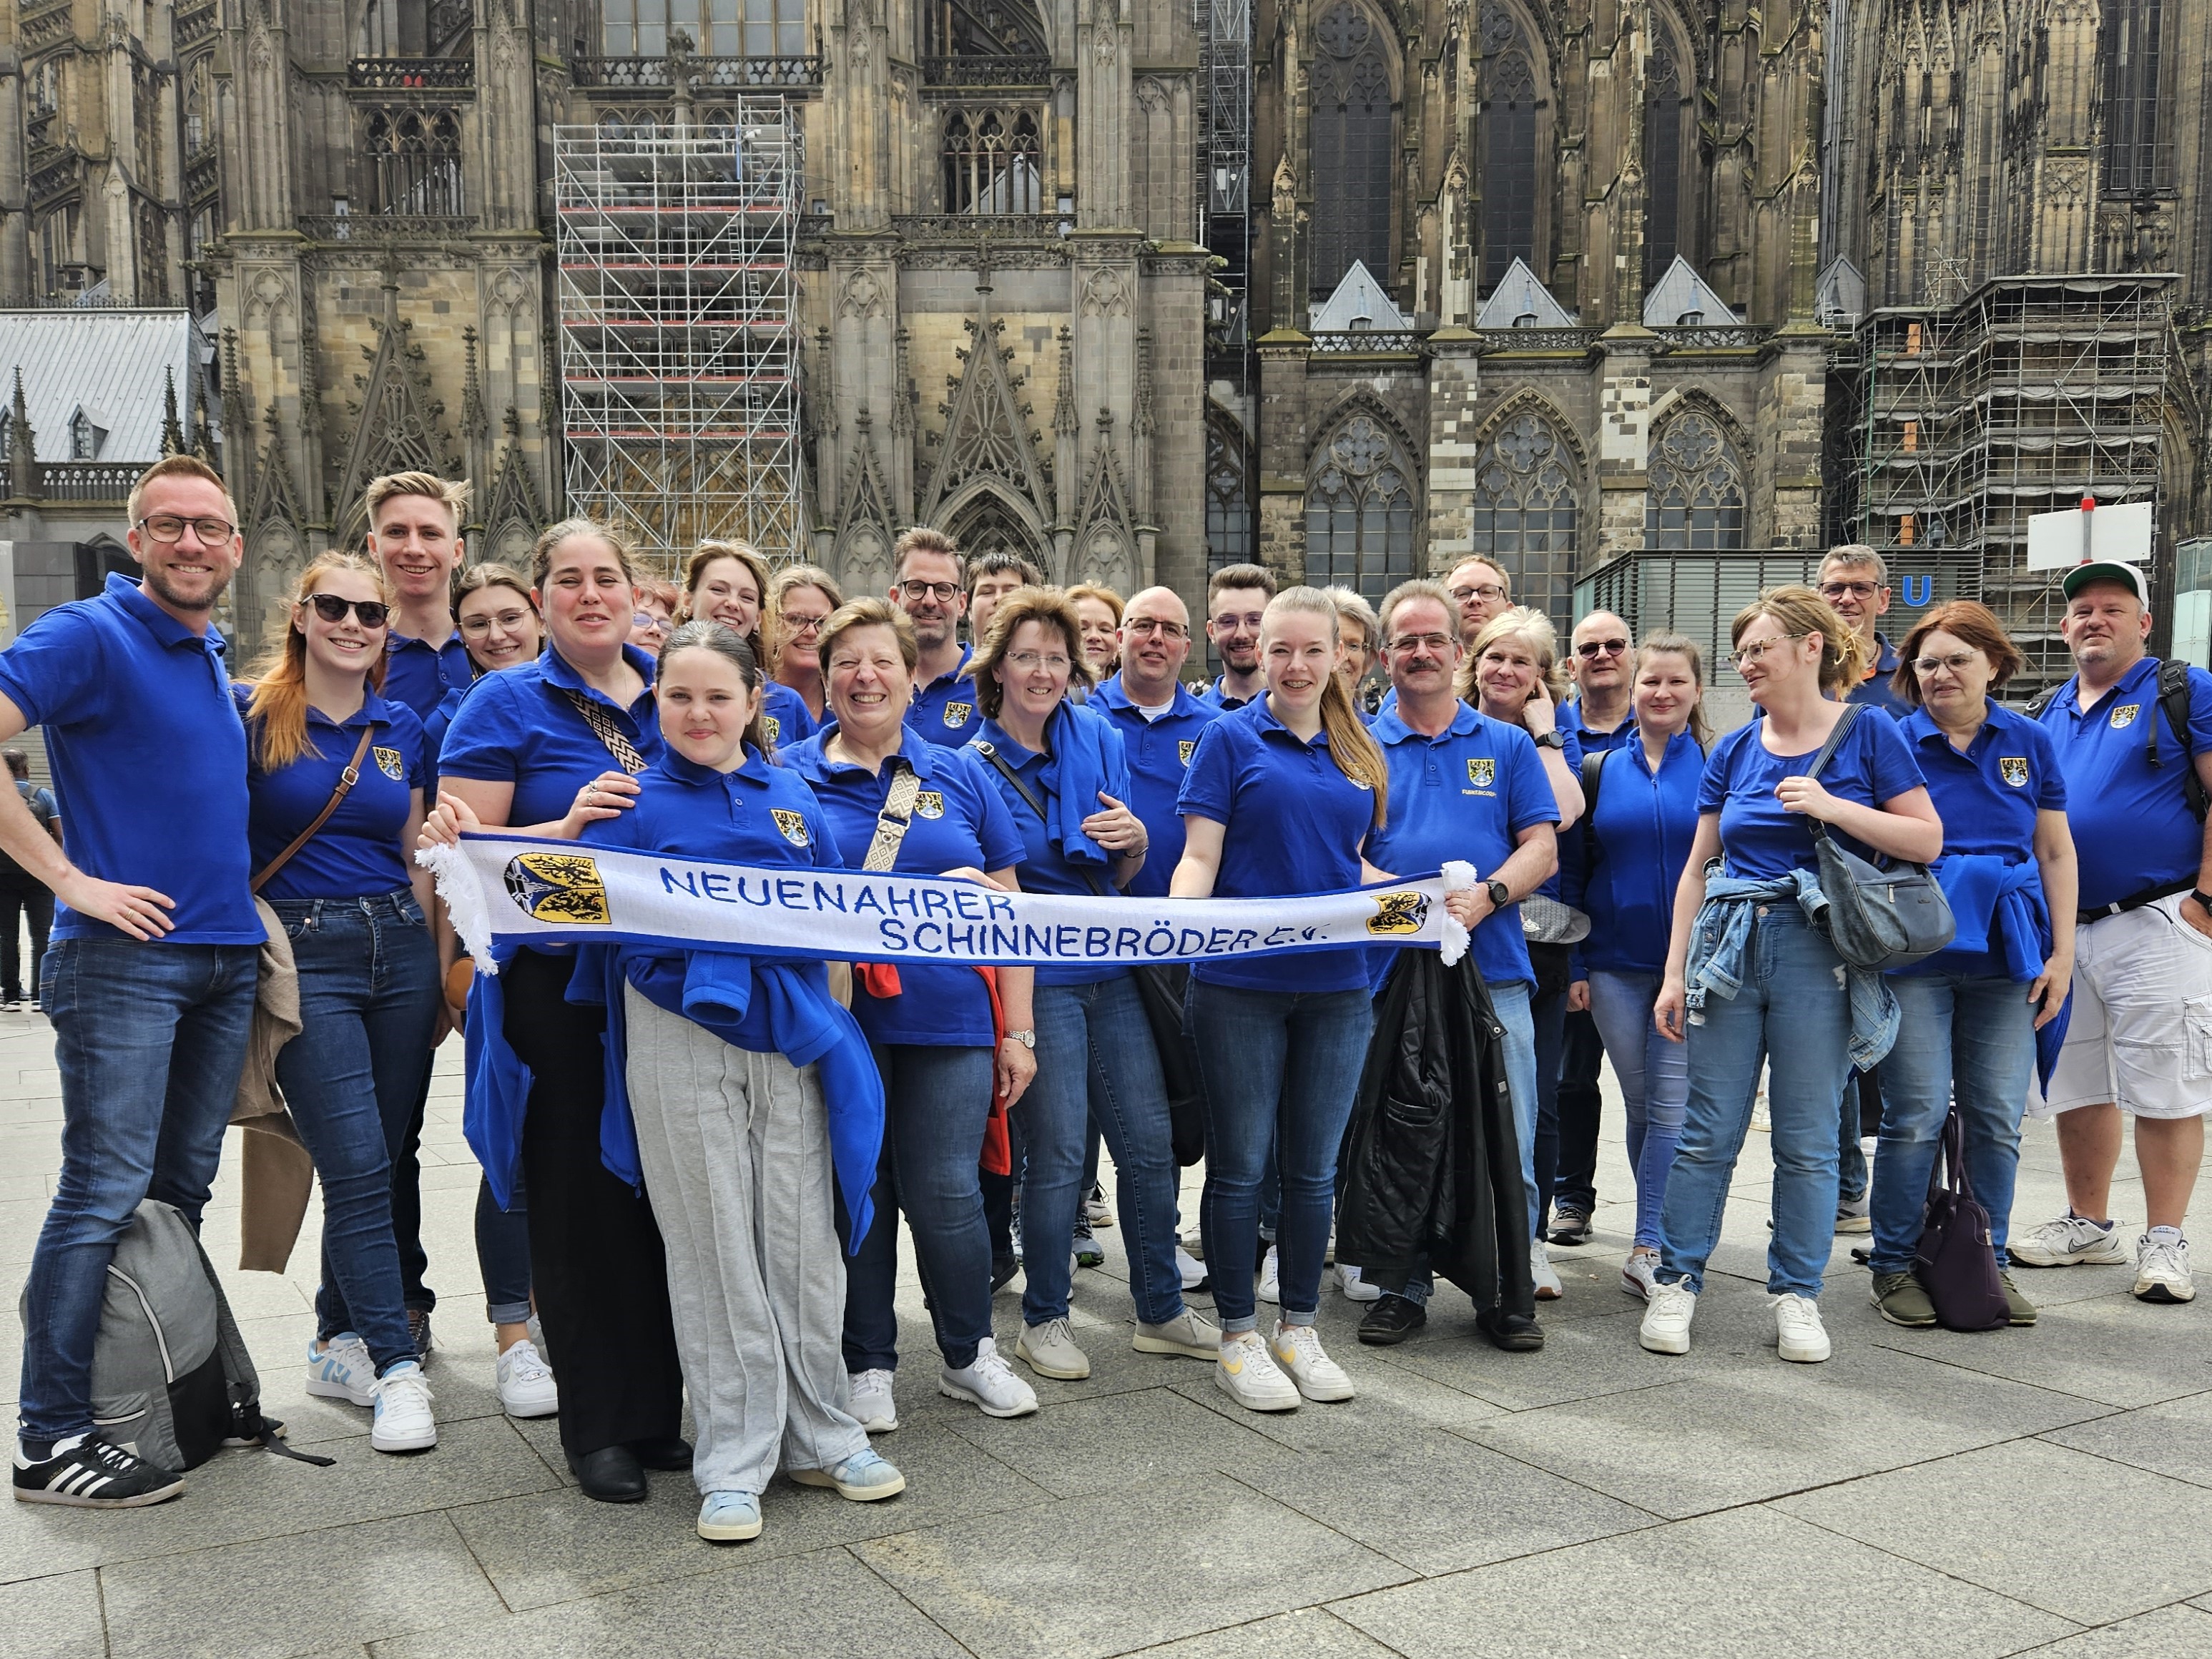 Dieses Bild zeigt das Gruppenfoto des Funkencorps vor dem Kölner Dom